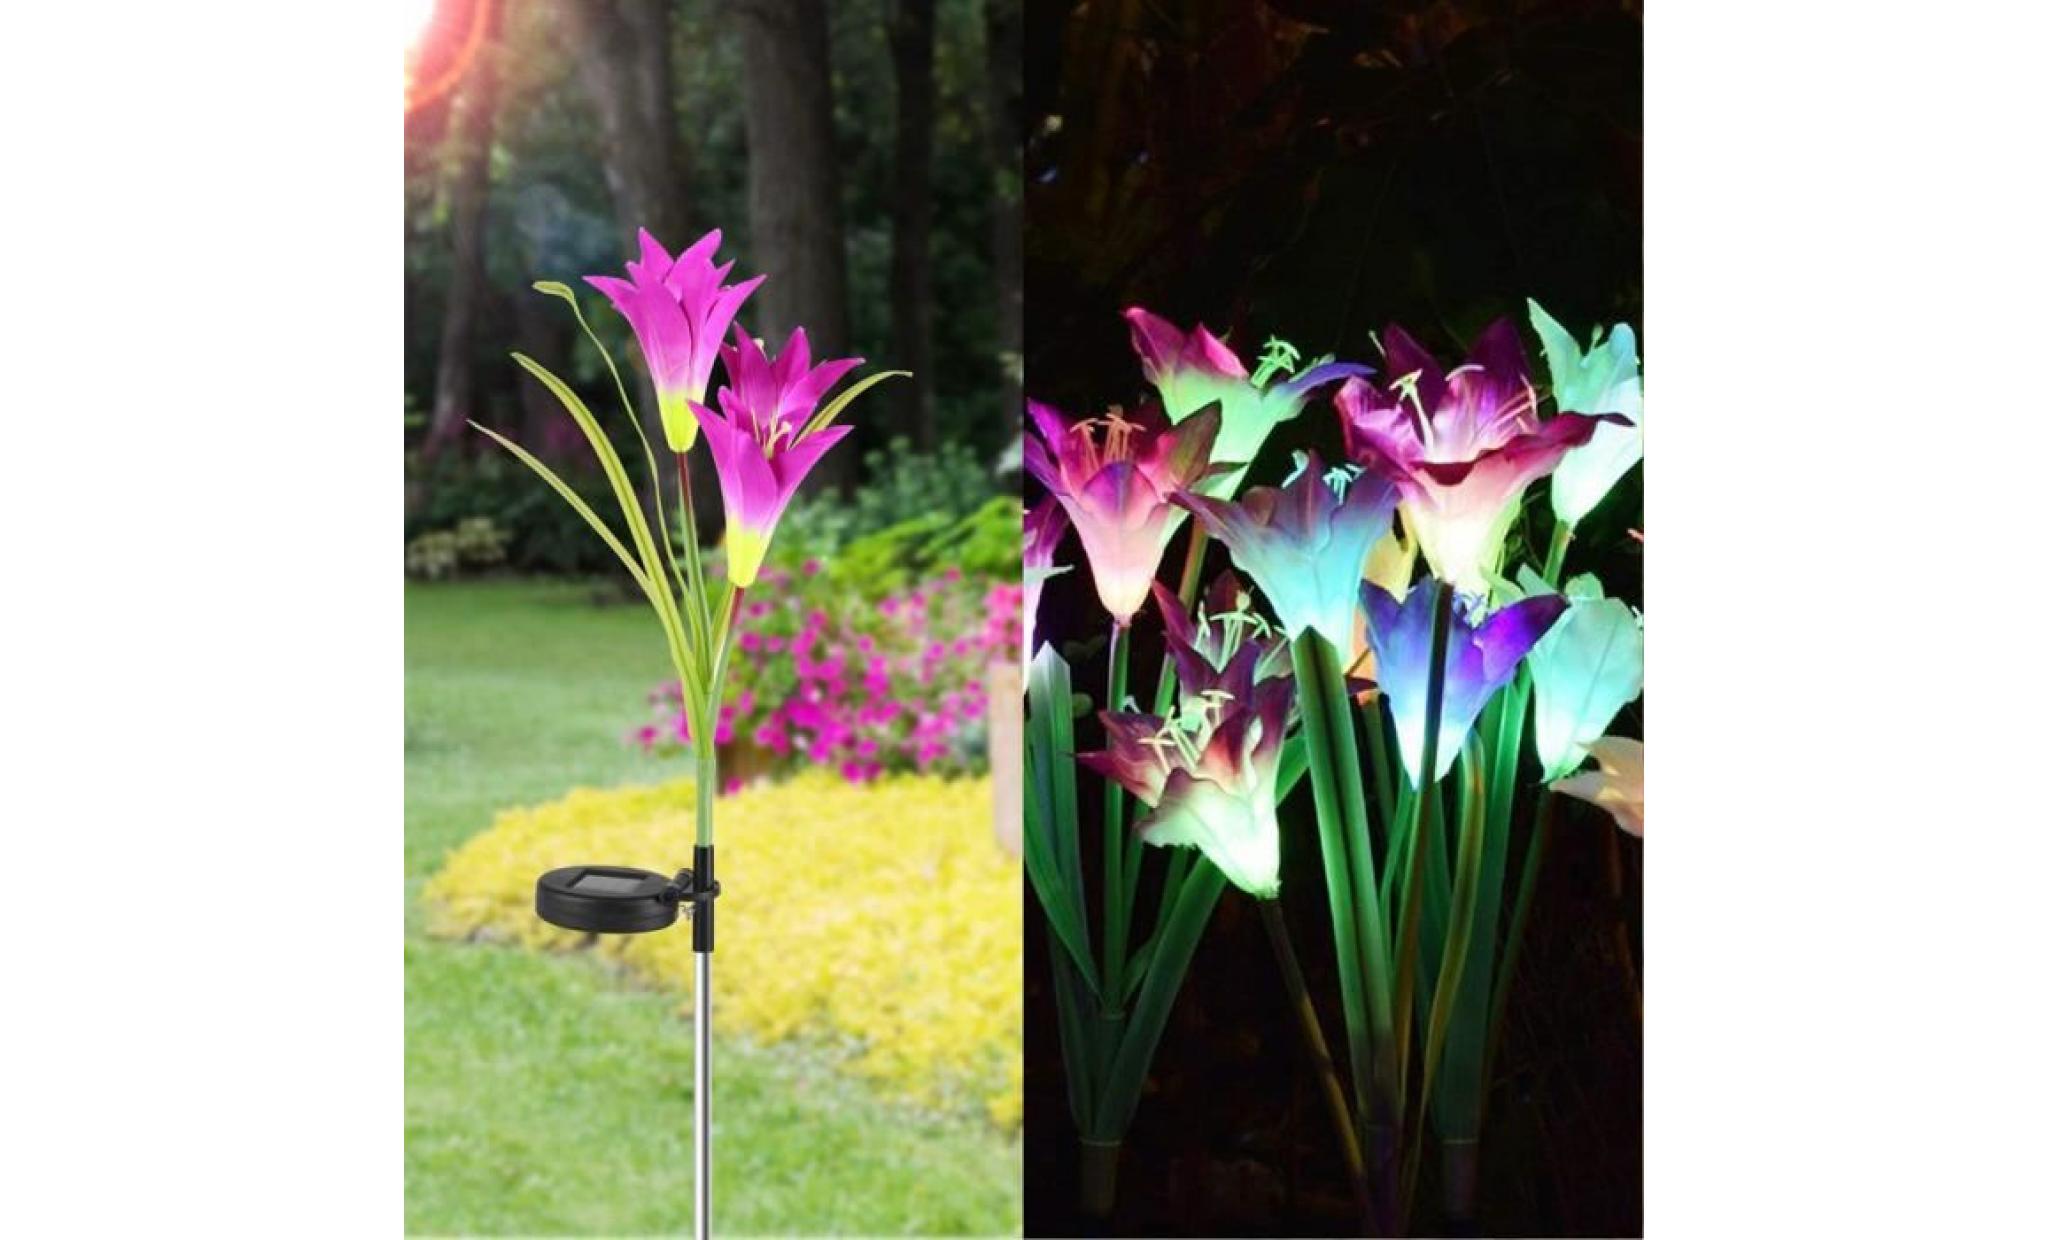 borne solaire 2 pcs fleur de lys jardin solaire actionné pieu lumières lumières fleurs artificielles led lumière #pa 132